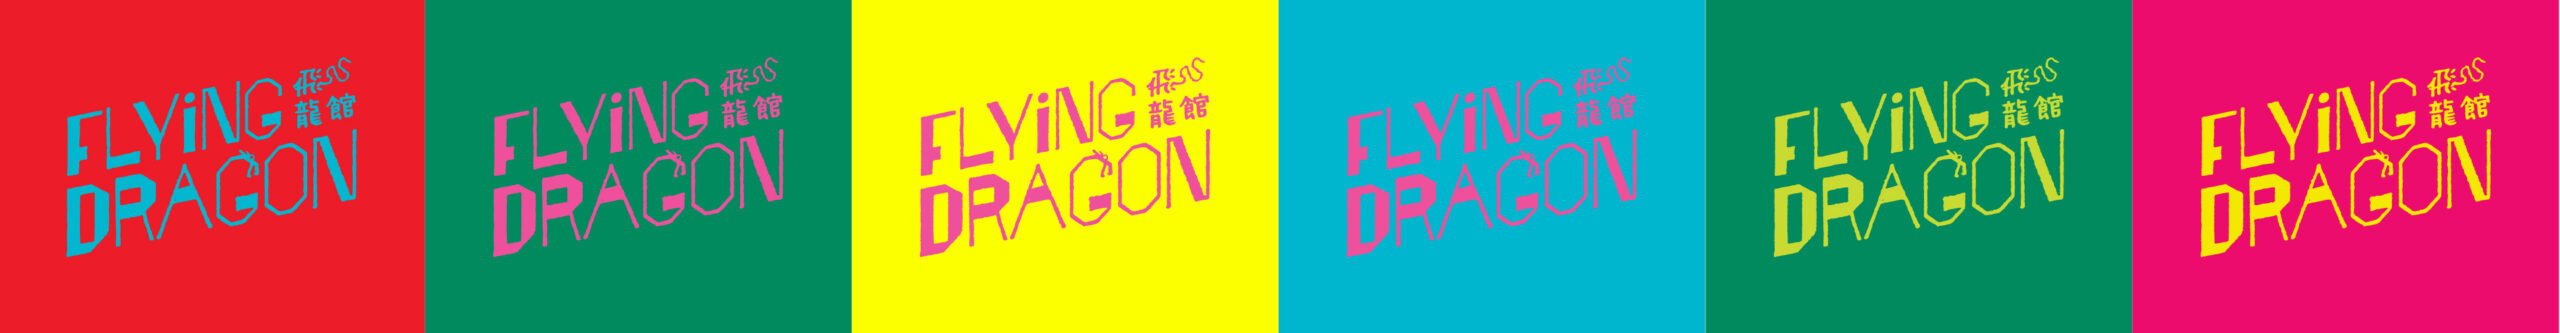 Flying Dragon Logo Variations